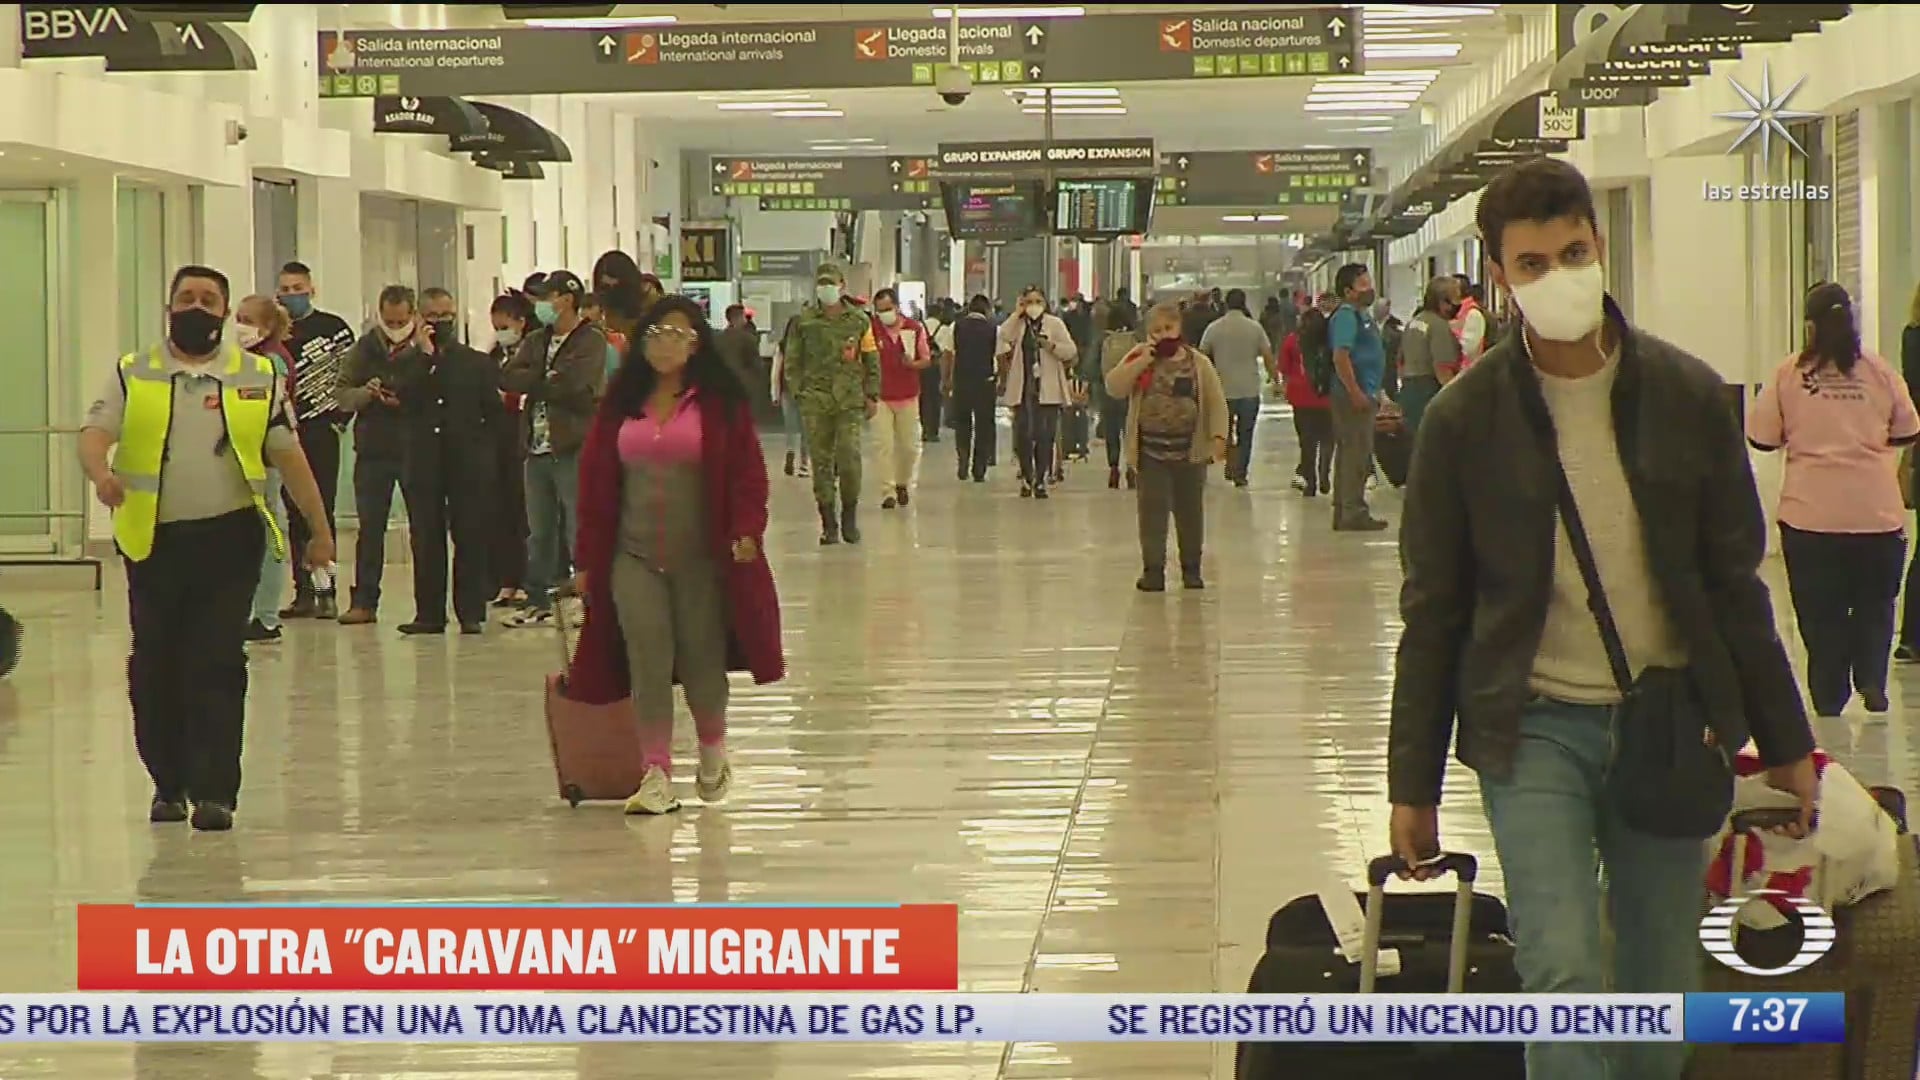 la otra caravana migrante brasilenos llegan en avion a mexico